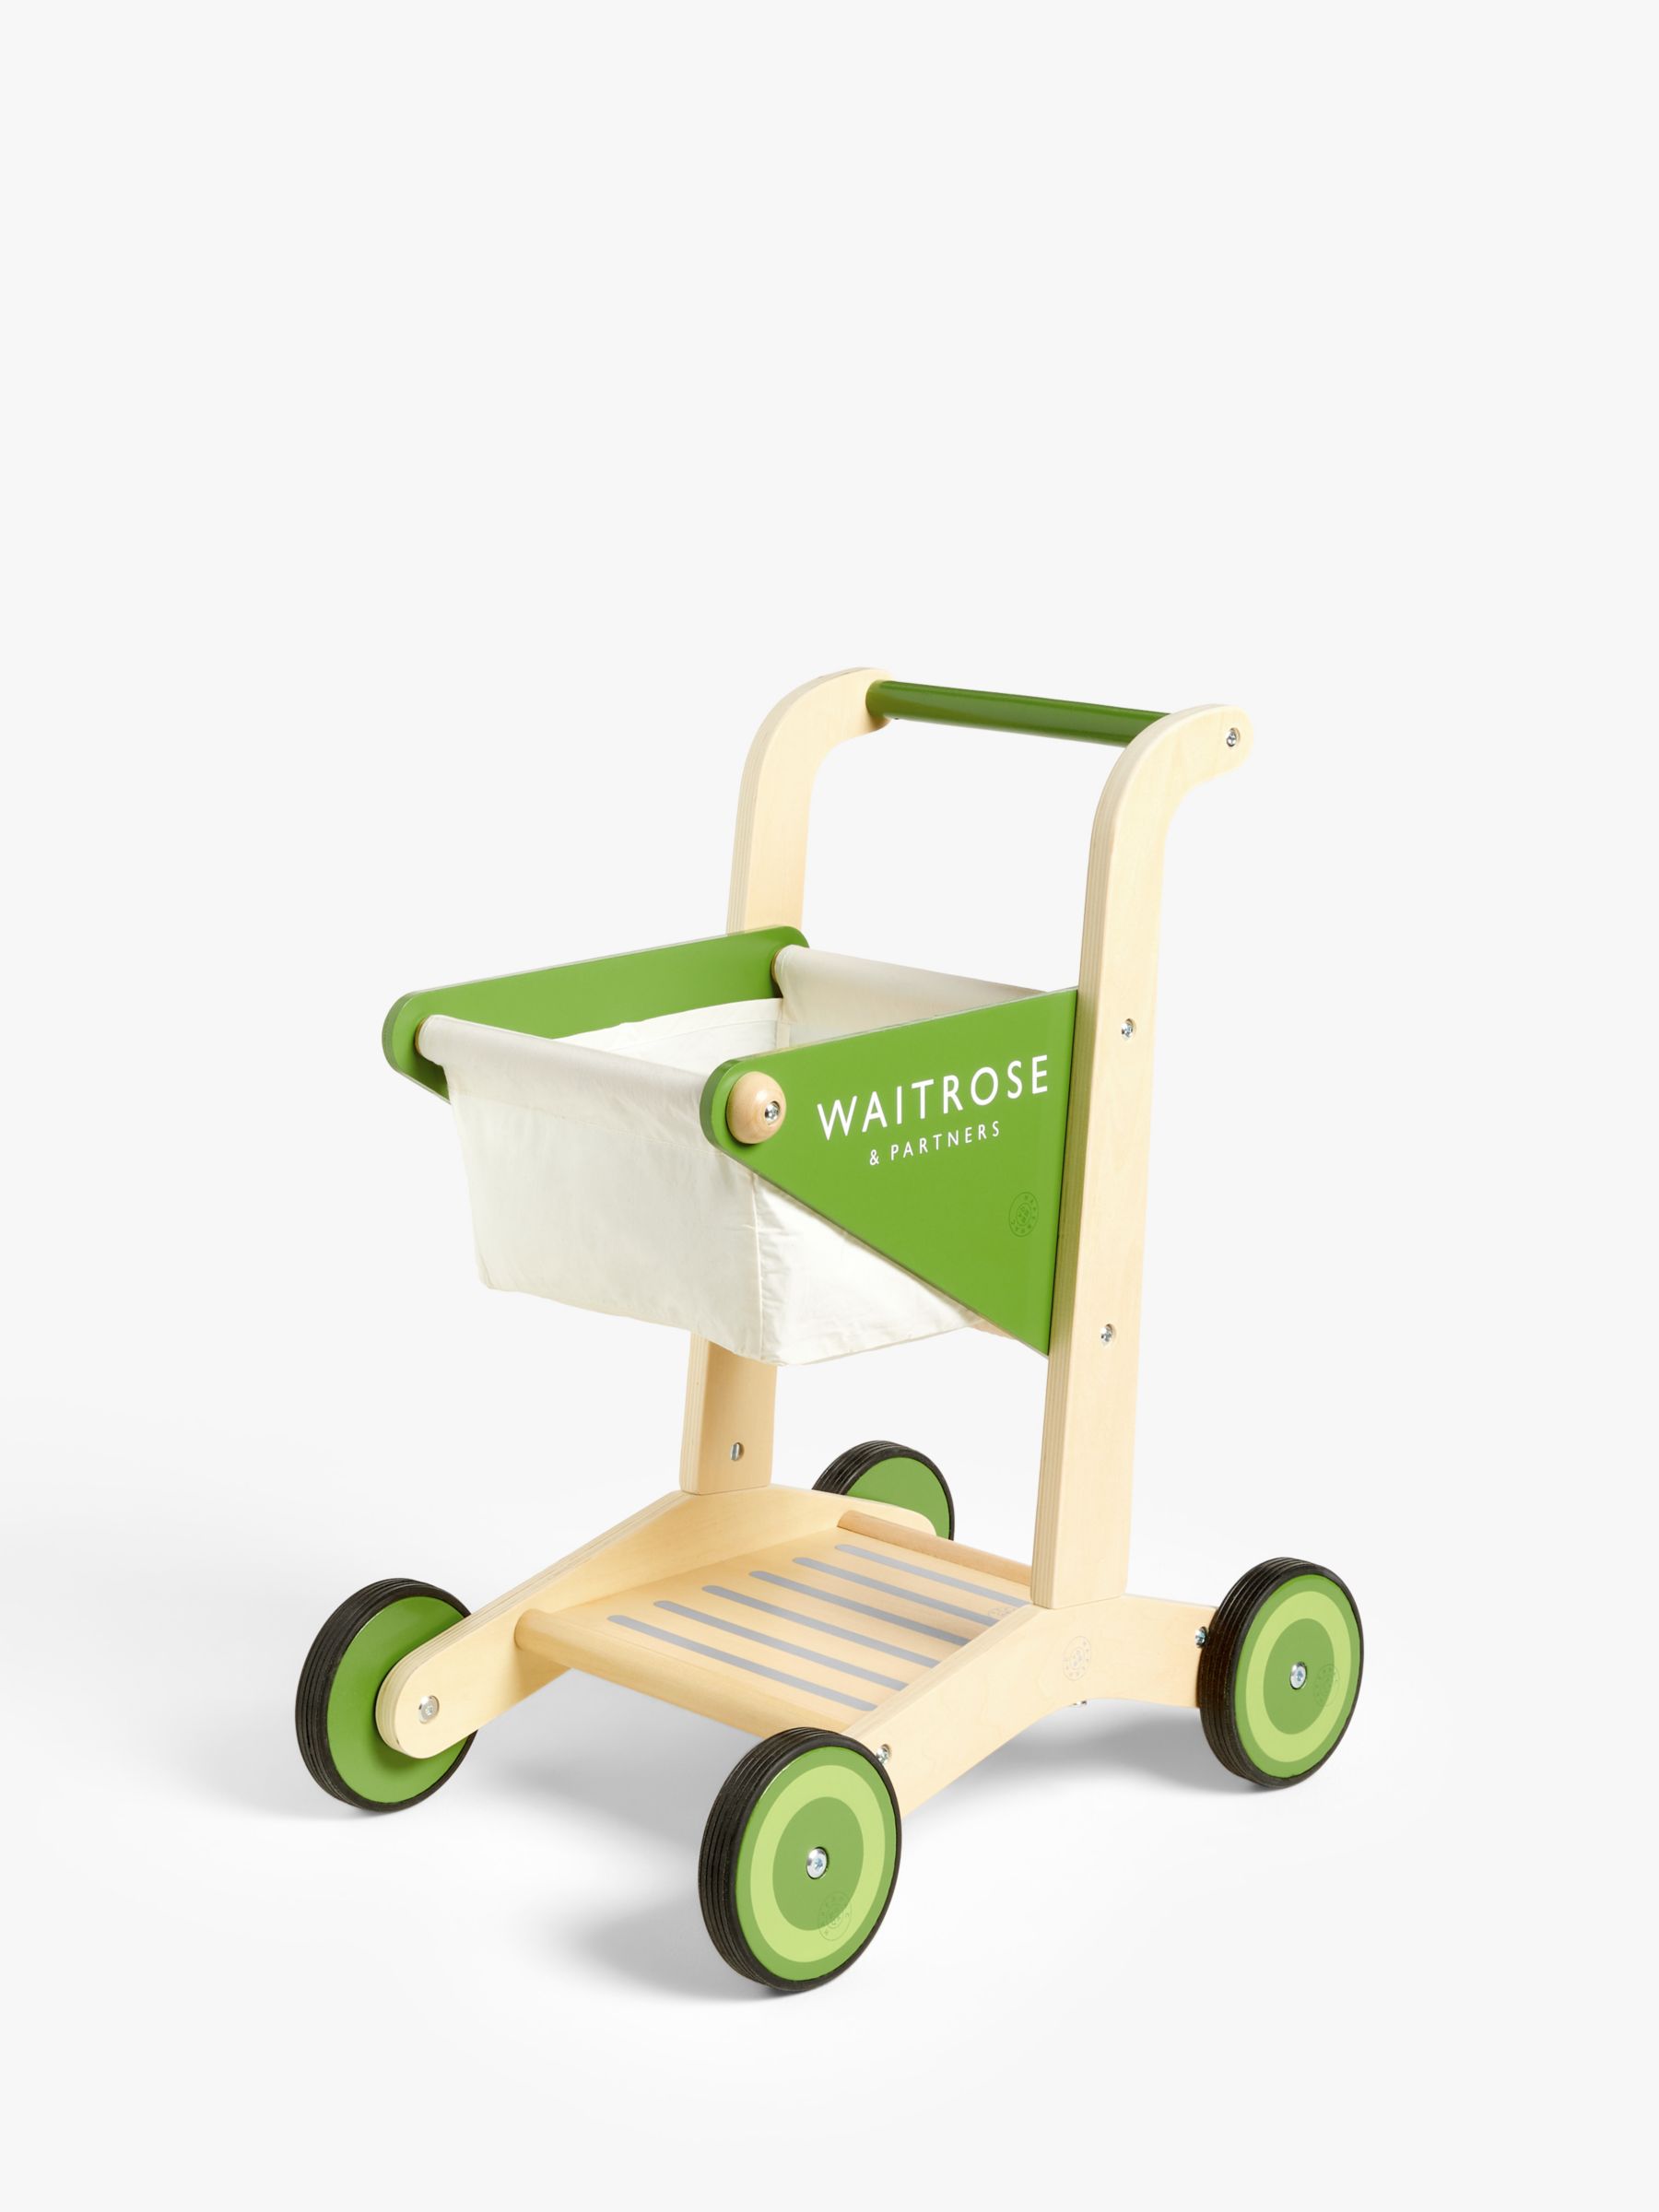 Waitrose Wooden Shopping Trolley